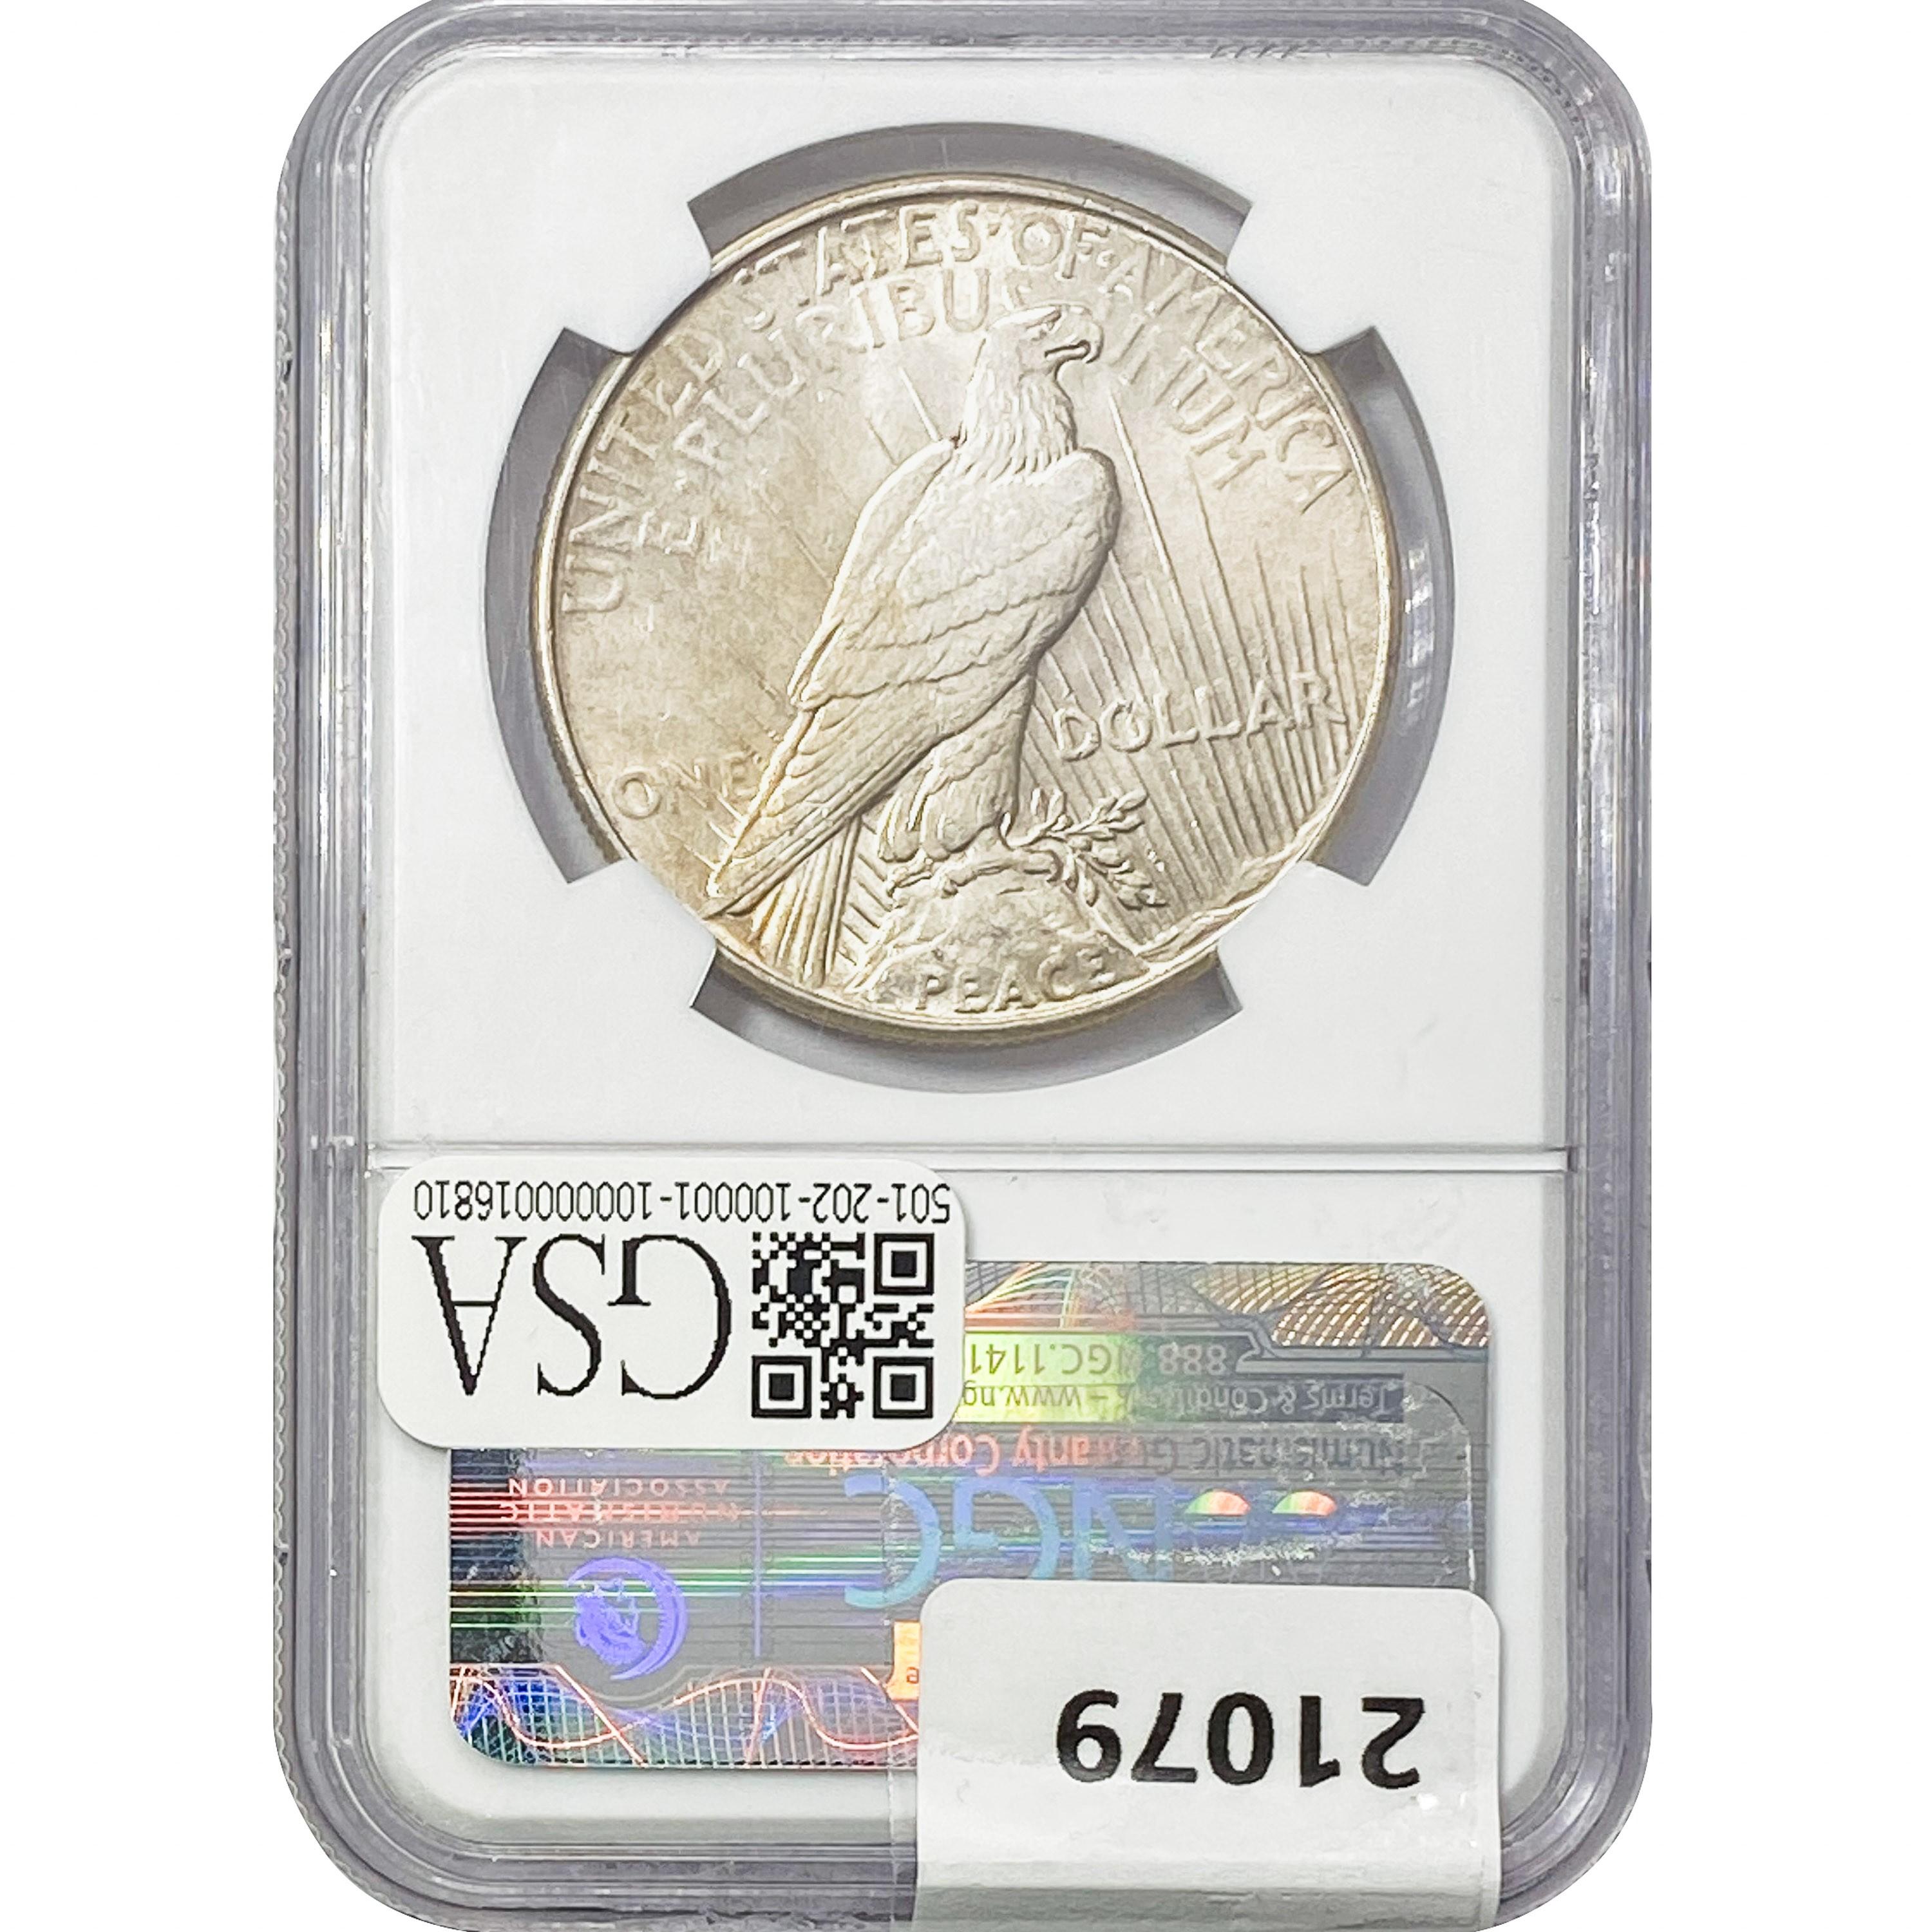 1935 Silver Peace Dollar NGC AU55